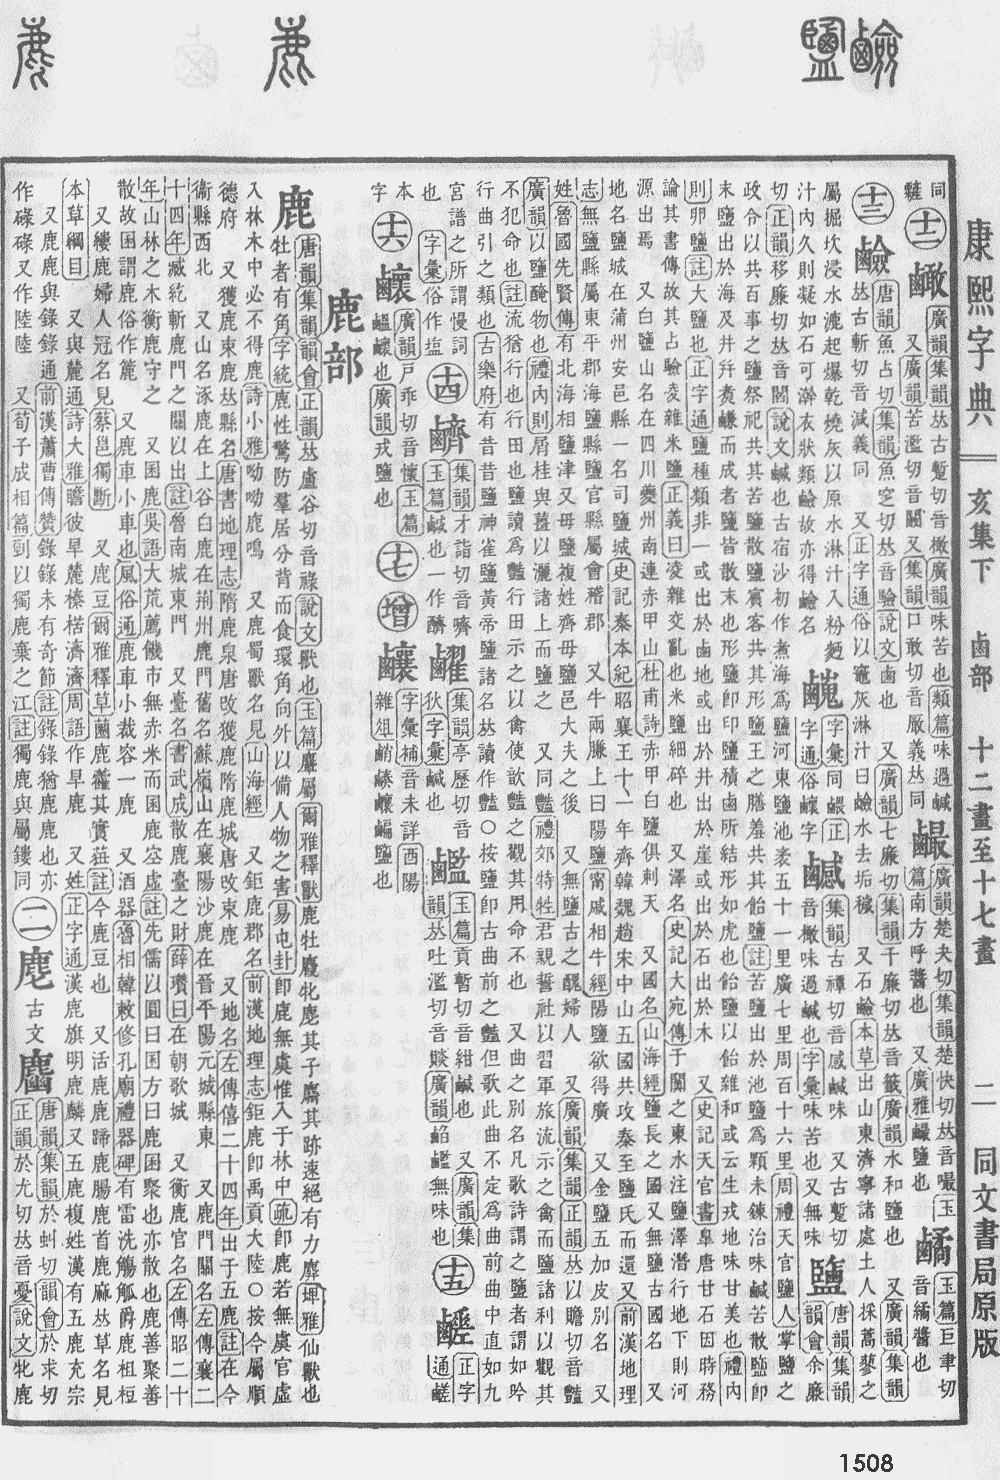 康熙字典第1508页图片